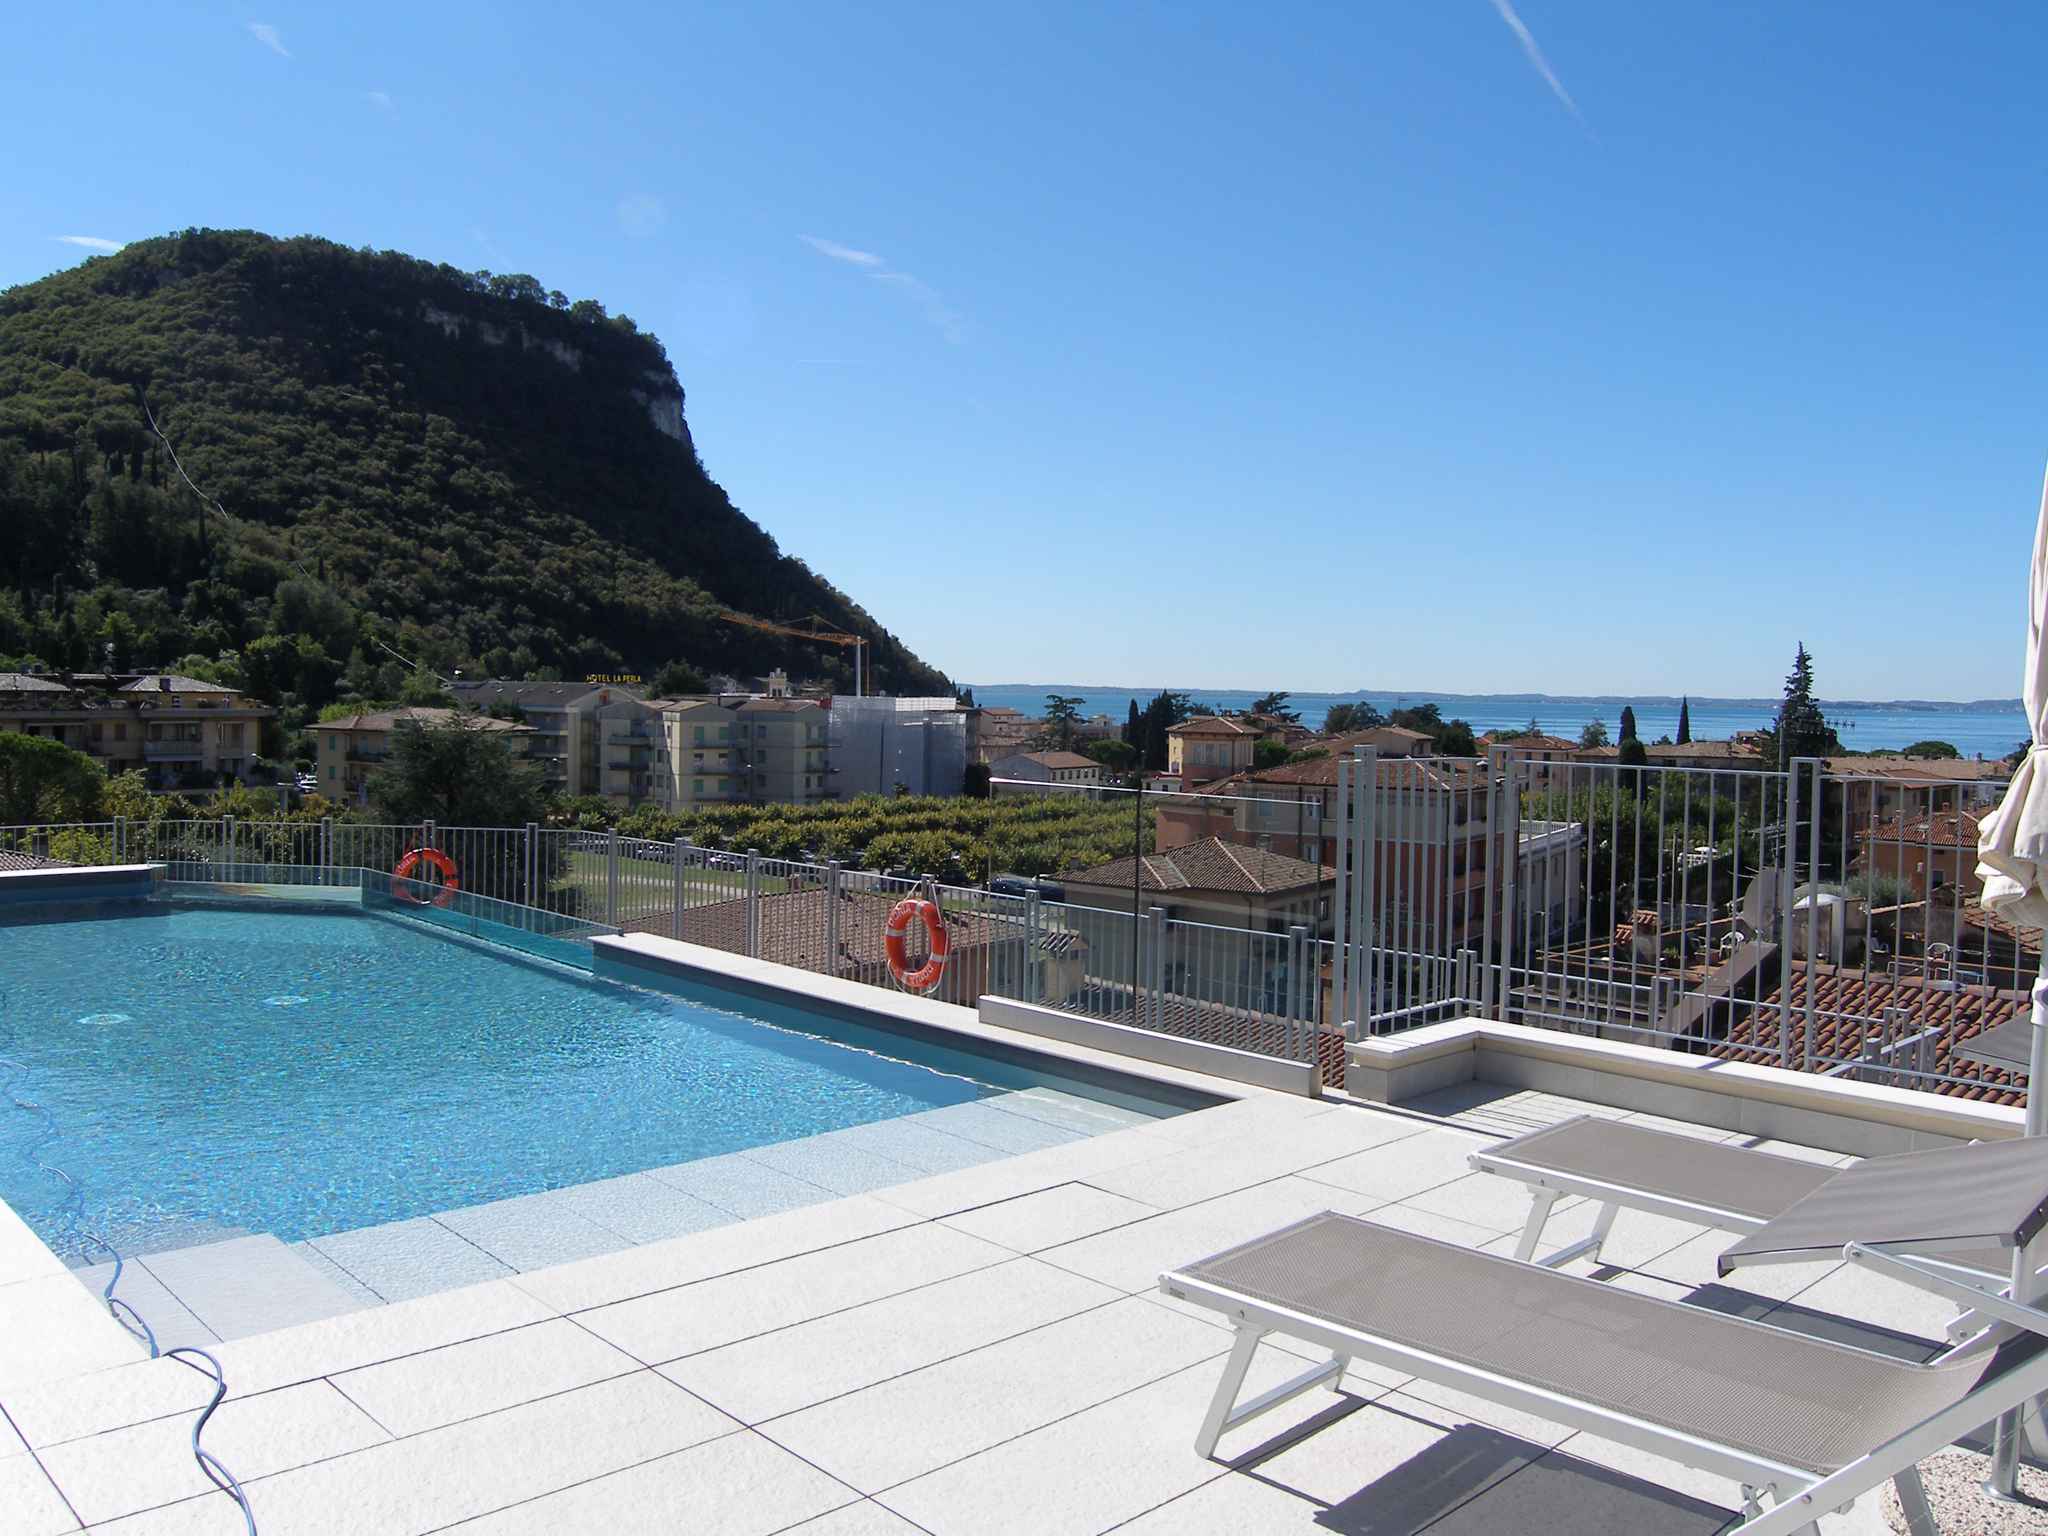 Ferienwohnung mit Pool auf dem Dach   Garda